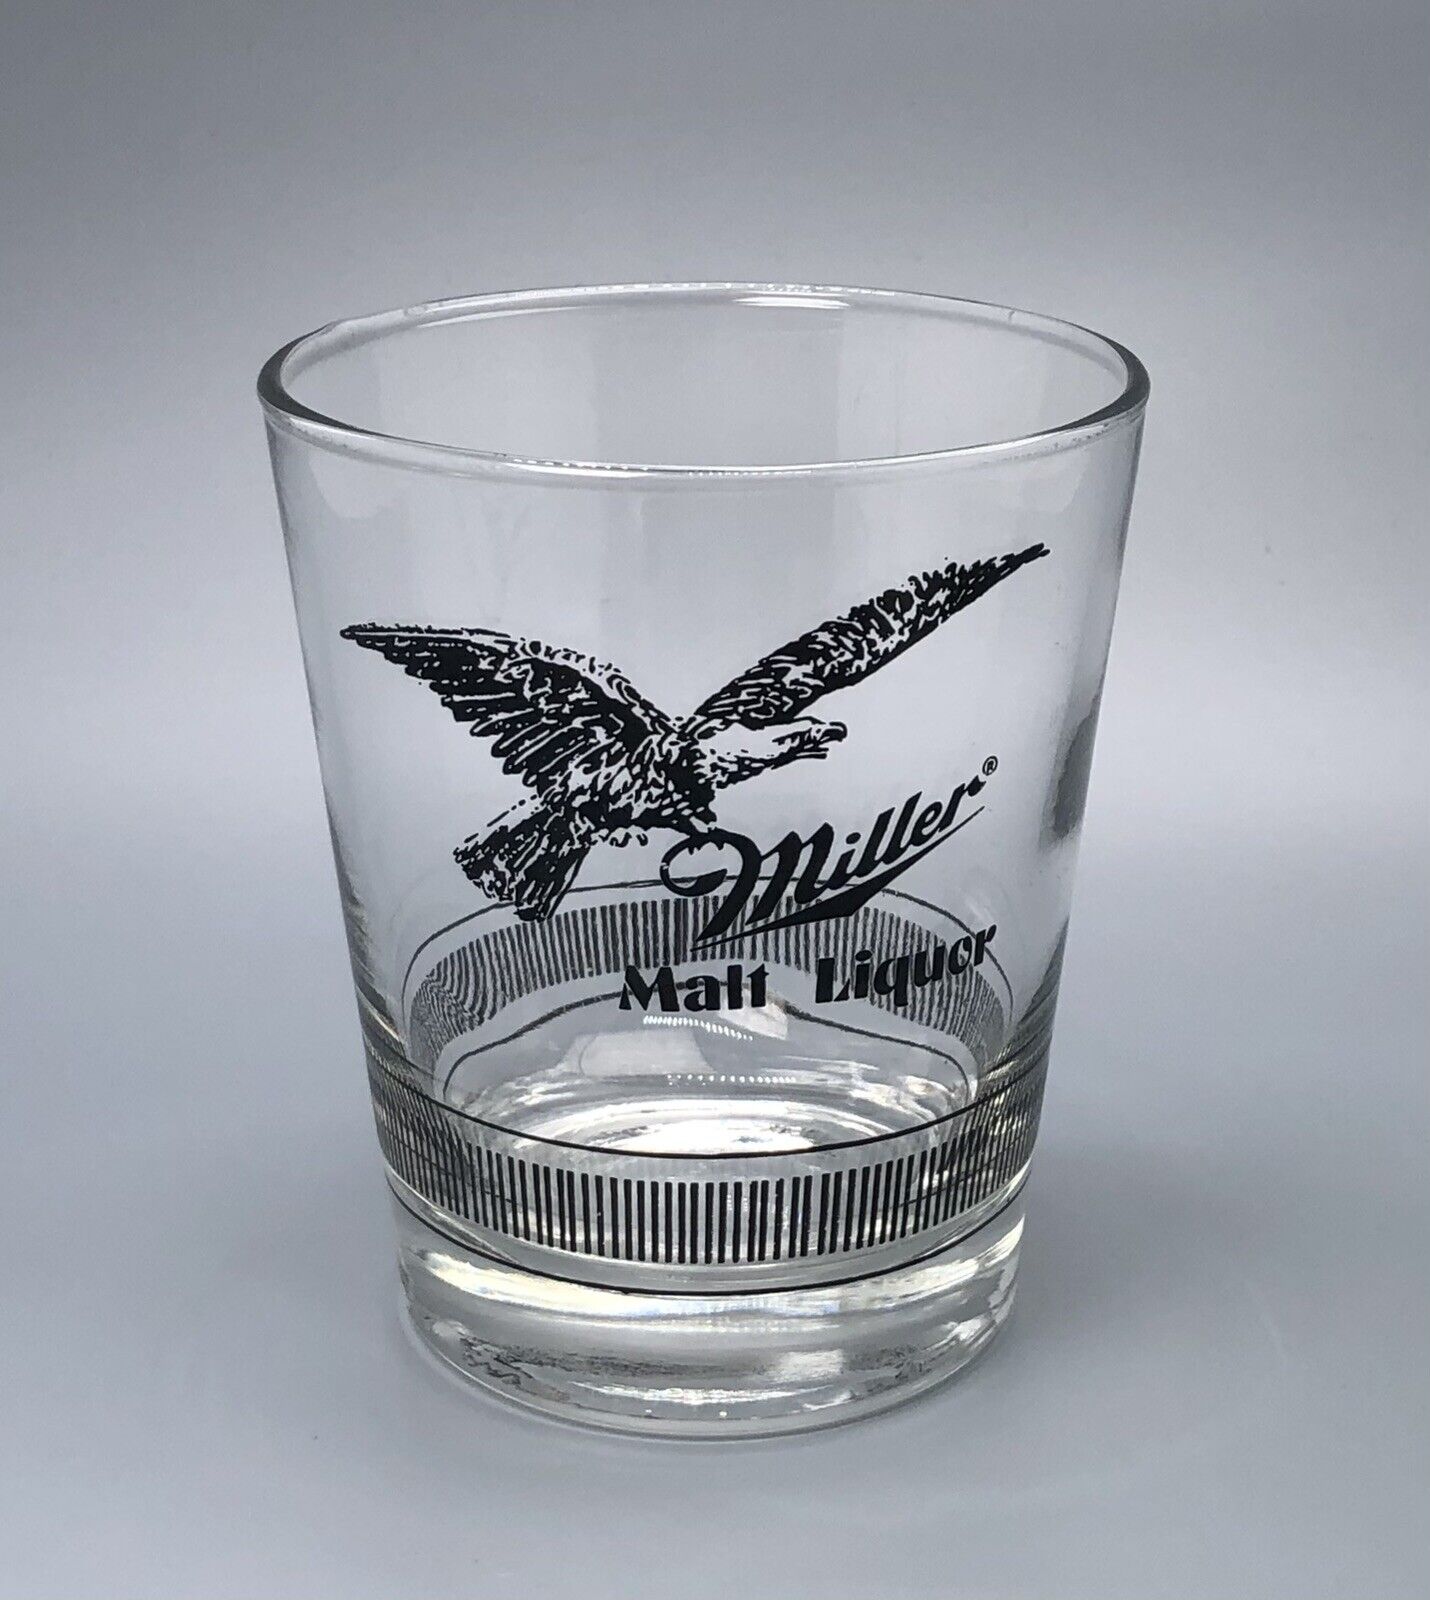 VTG BEER GLASS DISCOUNT / Miller Malt Liquor Lowball / Man Cave Home Bar Decor